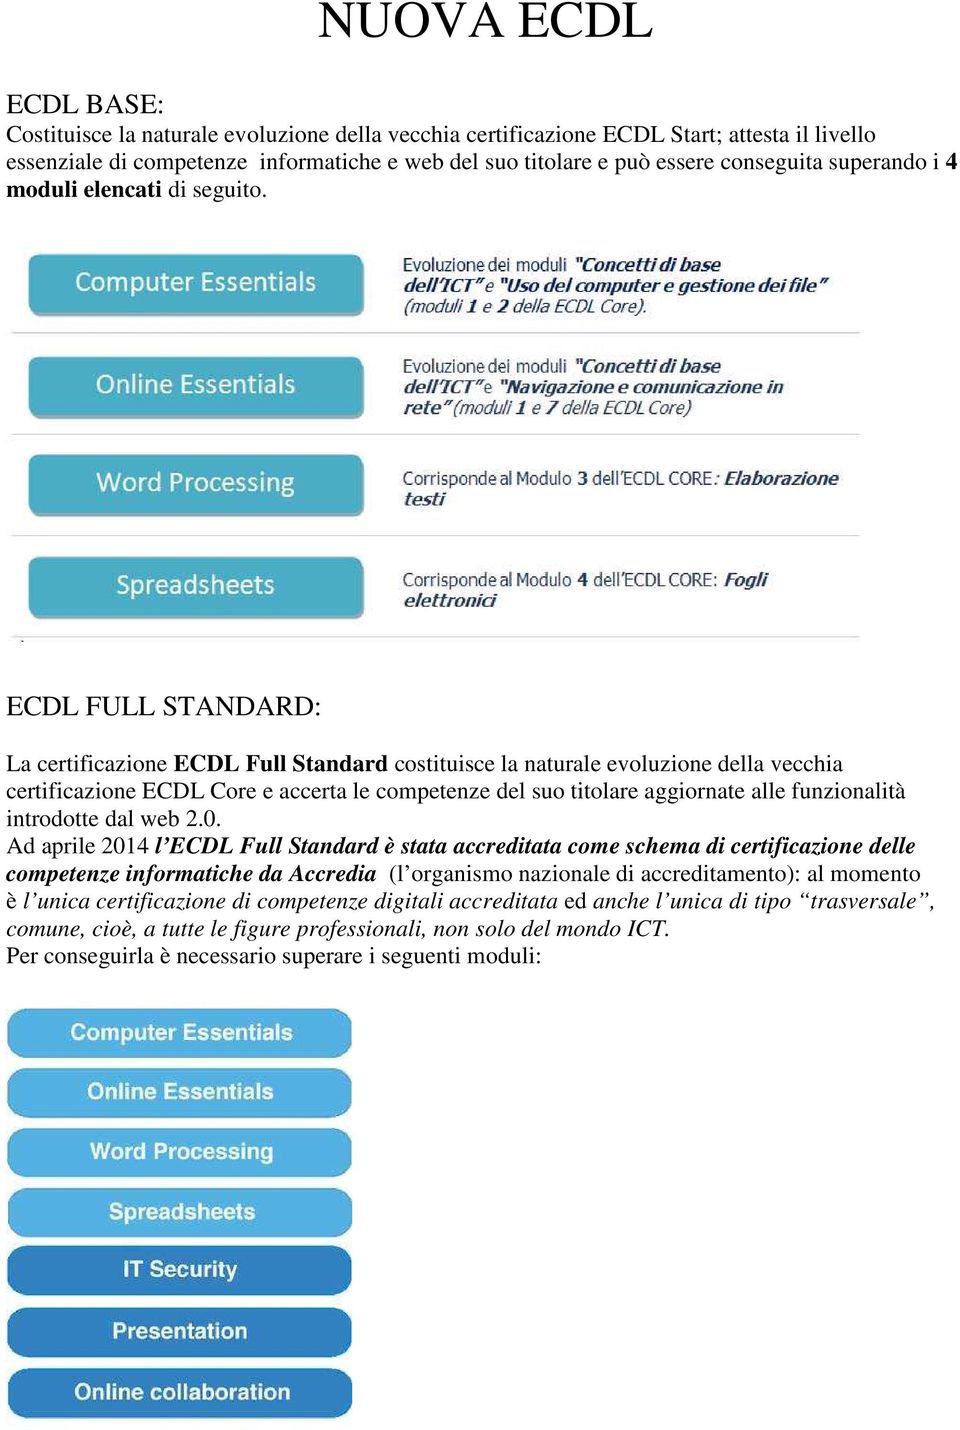 ECDL FULL STANDARD: La certificazione ECDL Full Standard costituisce la naturale evoluzione della vecchia certificazione ECDL Core e accerta le competenze del suo titolare aggiornate alle